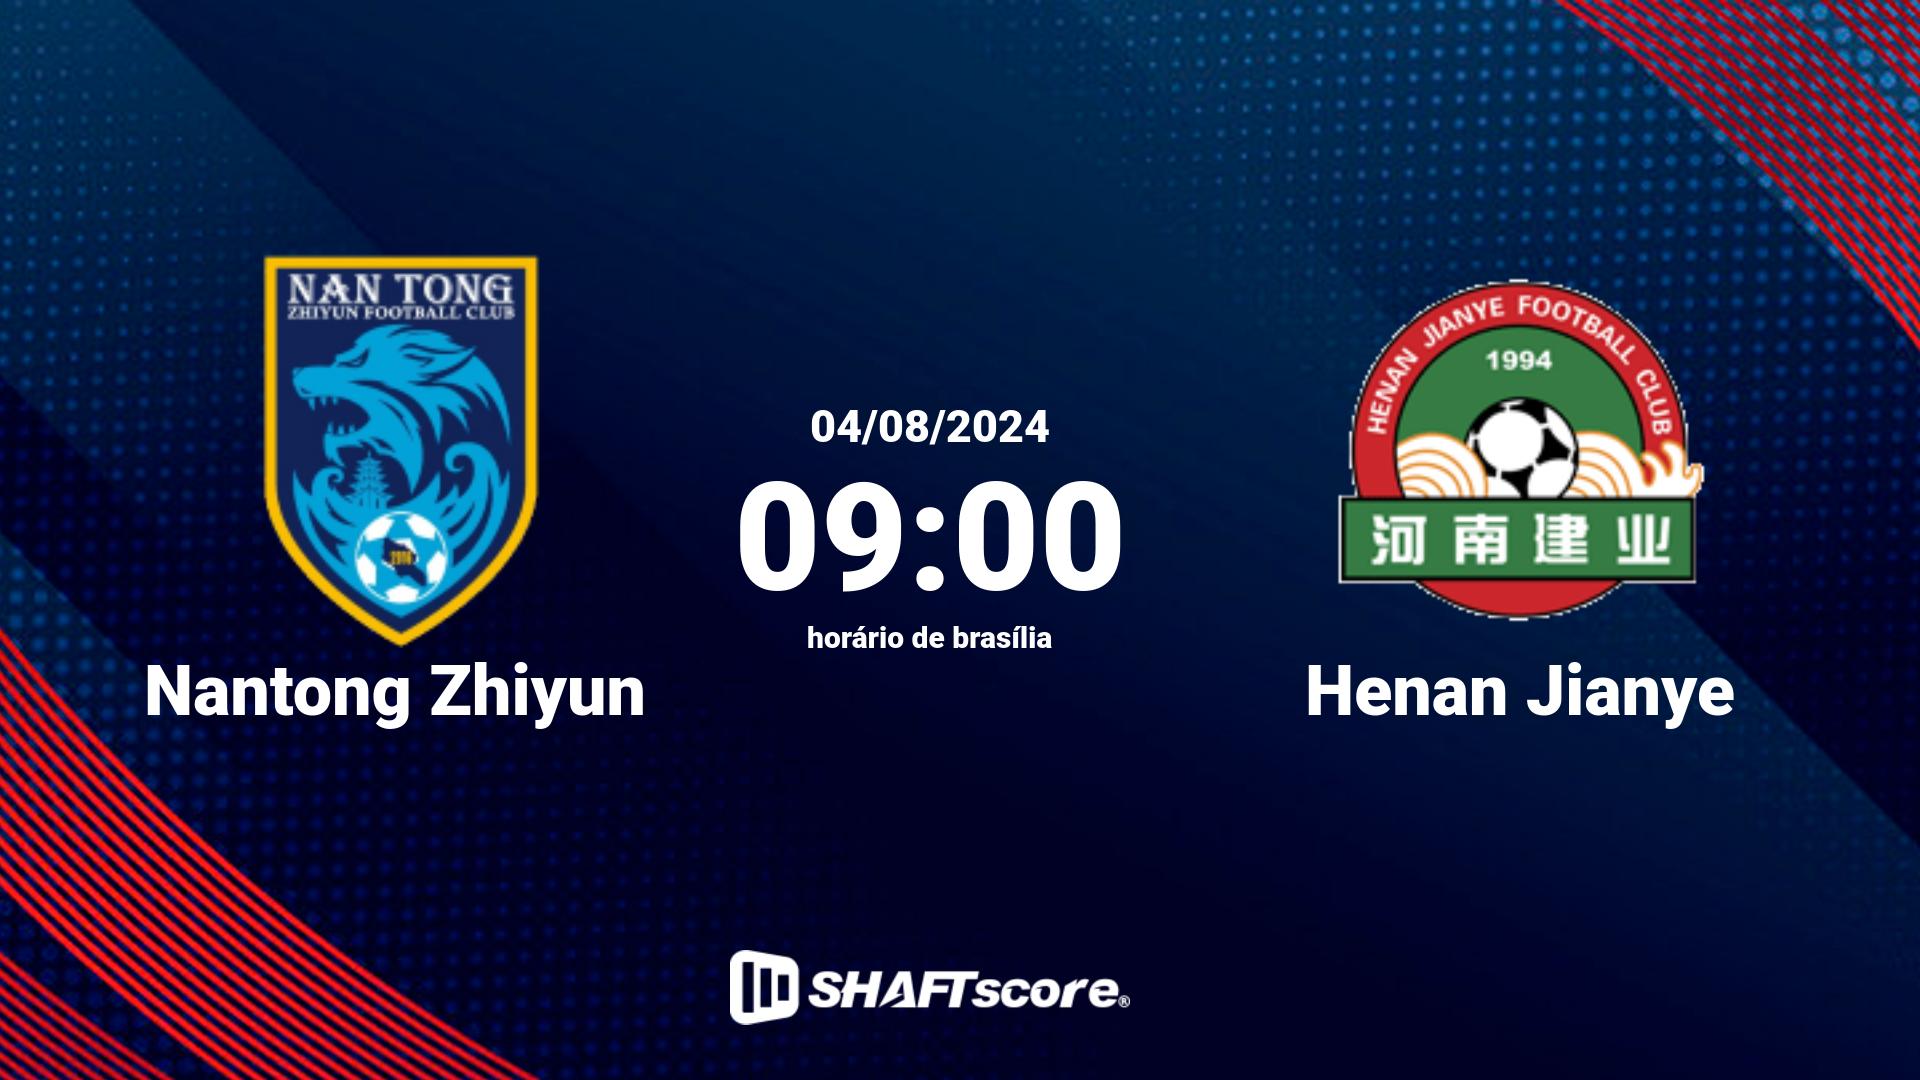 Estatísticas do jogo Nantong Zhiyun vs Henan Jianye 04.08 09:00